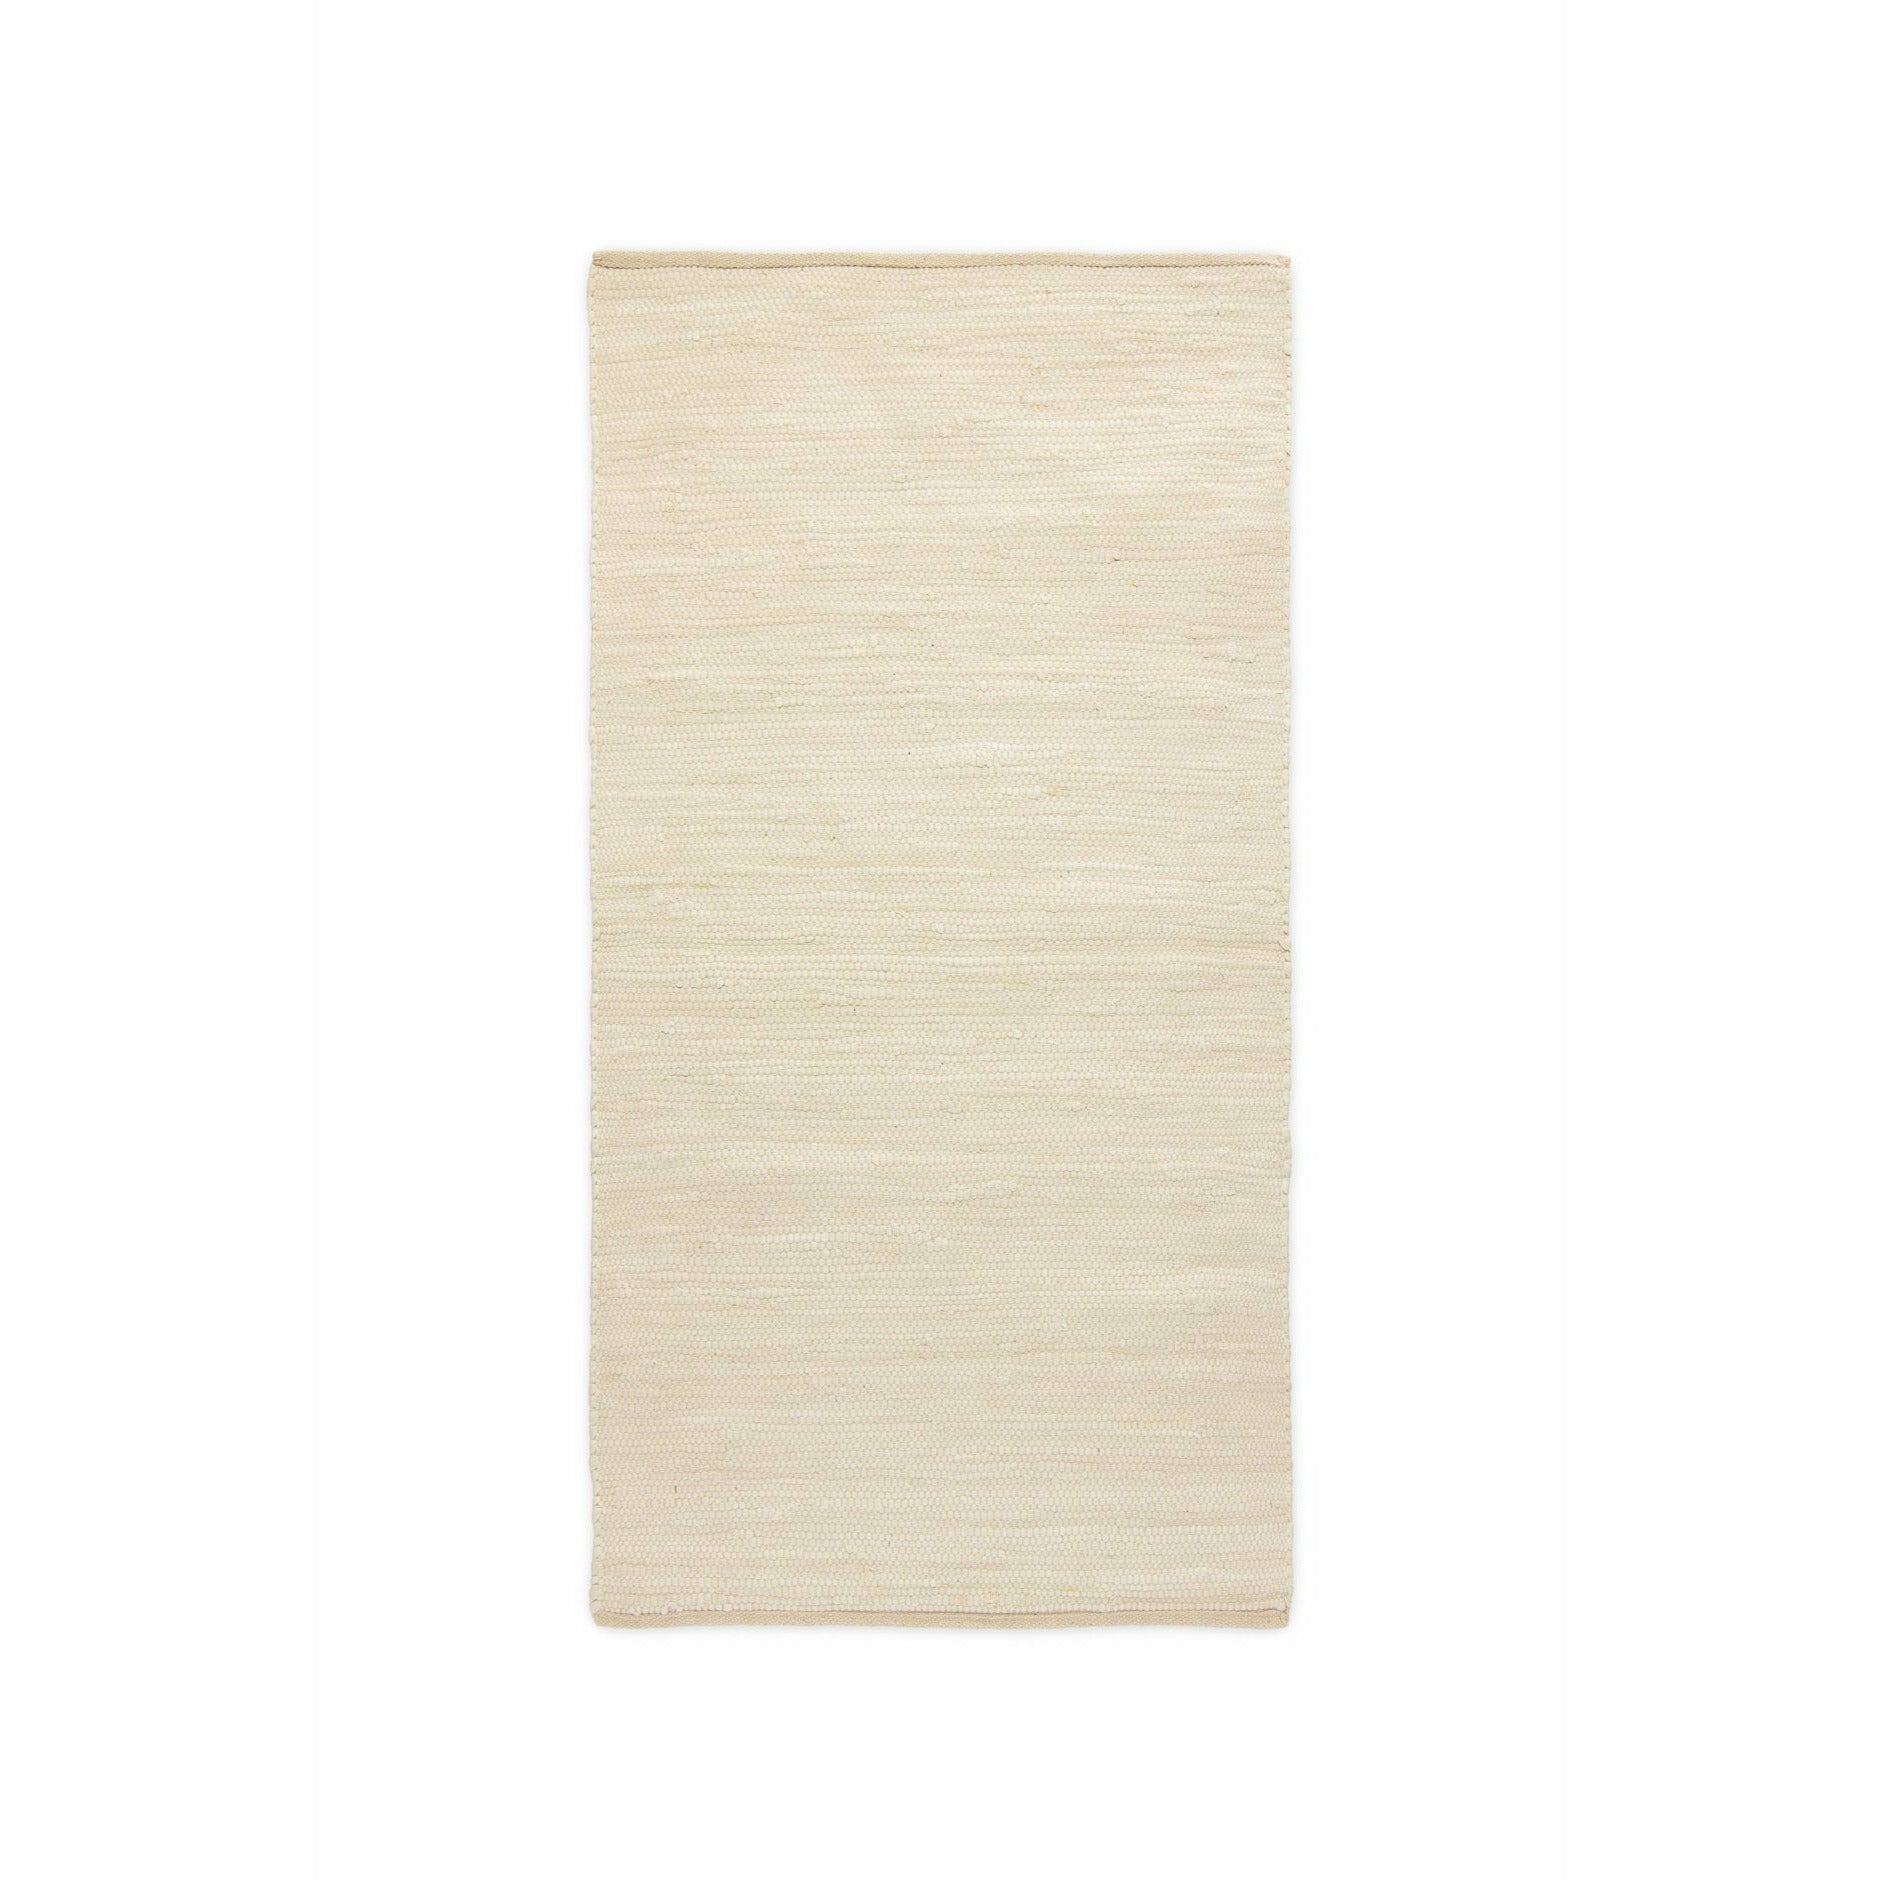 Rug Solid Cotton Carpet Desert White, 65 X 135 Cm